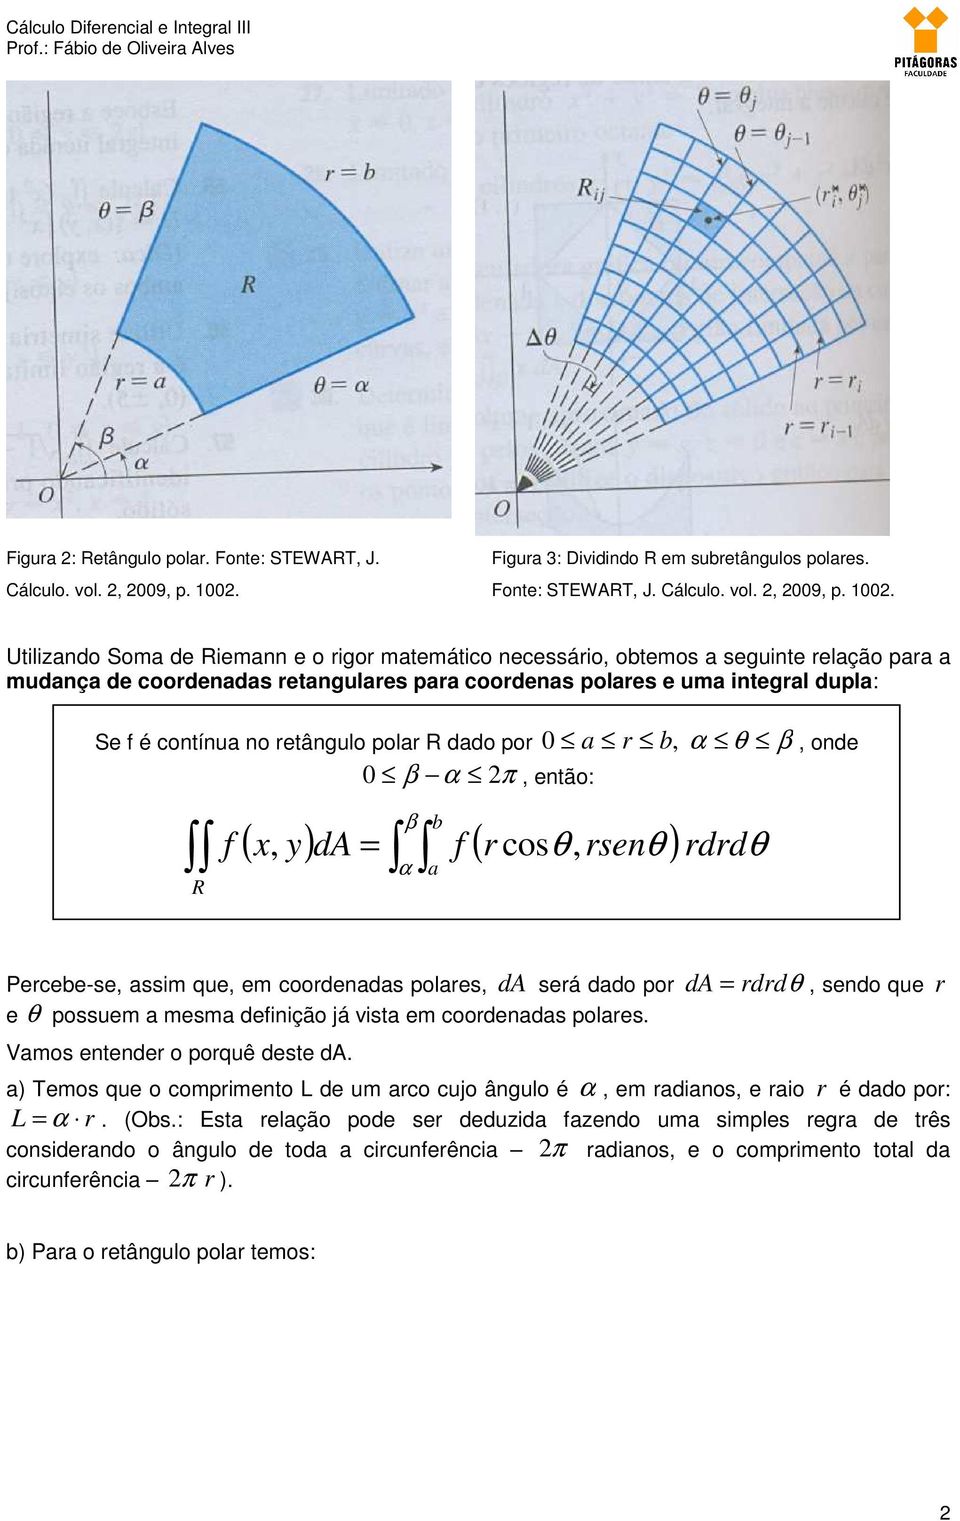 Utilizando Soma de iemann e o rigor matemático necessário, obtemos a seguinte relação para a mudança de coordenadas retangulares para coordenas polares e uma integral dupla: Se f é contínua no